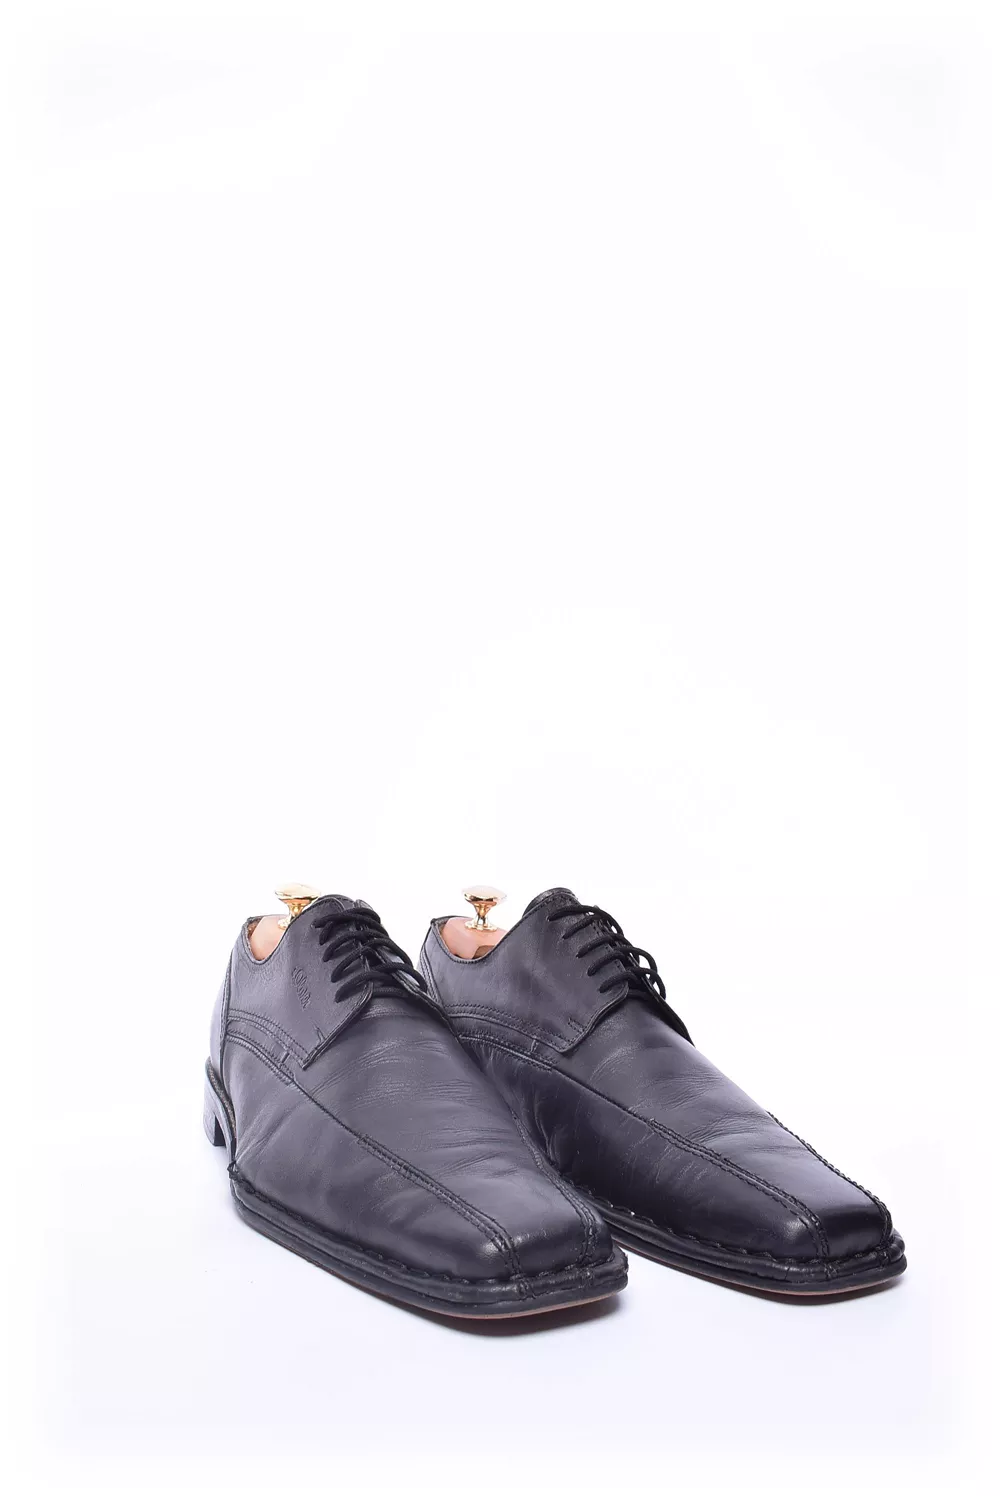 Pantofi barbati [3]